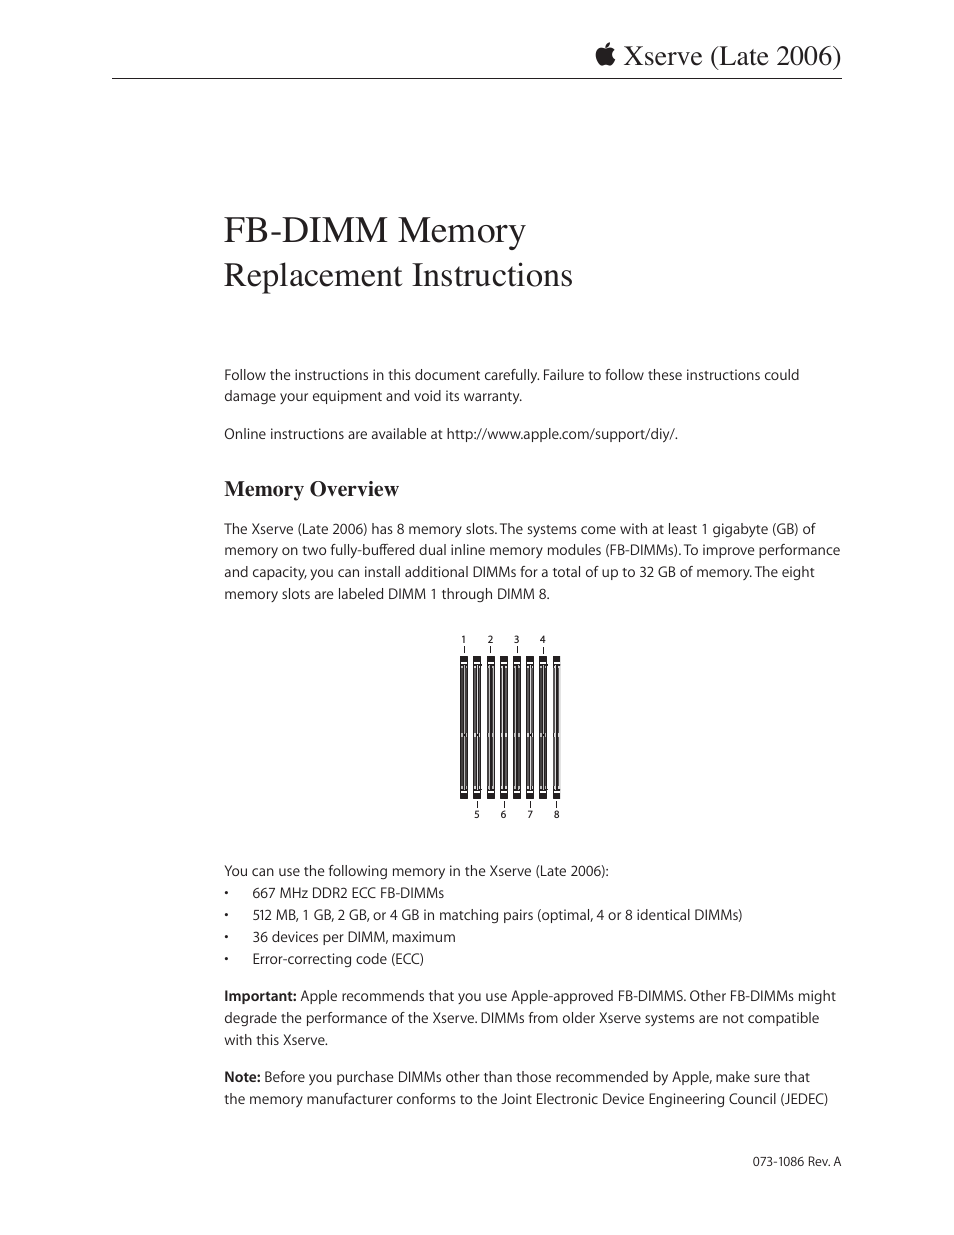 Xserve Intel (Late 2006) DIY Procedure for FB-DIMM Memory